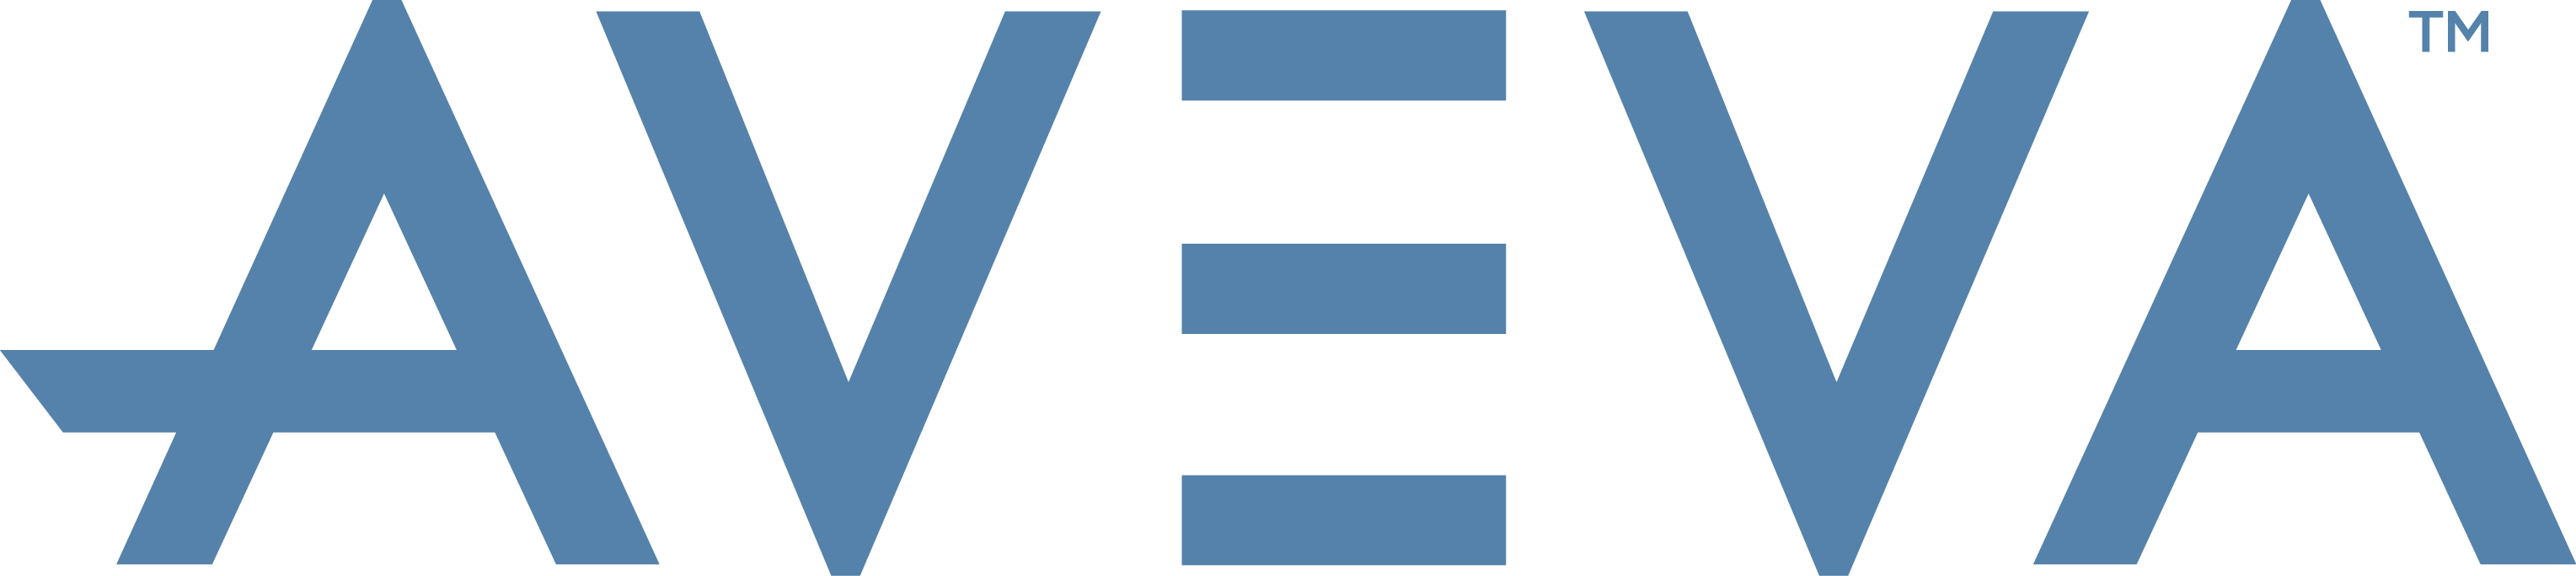 AVEVA logo blue RGB May2018